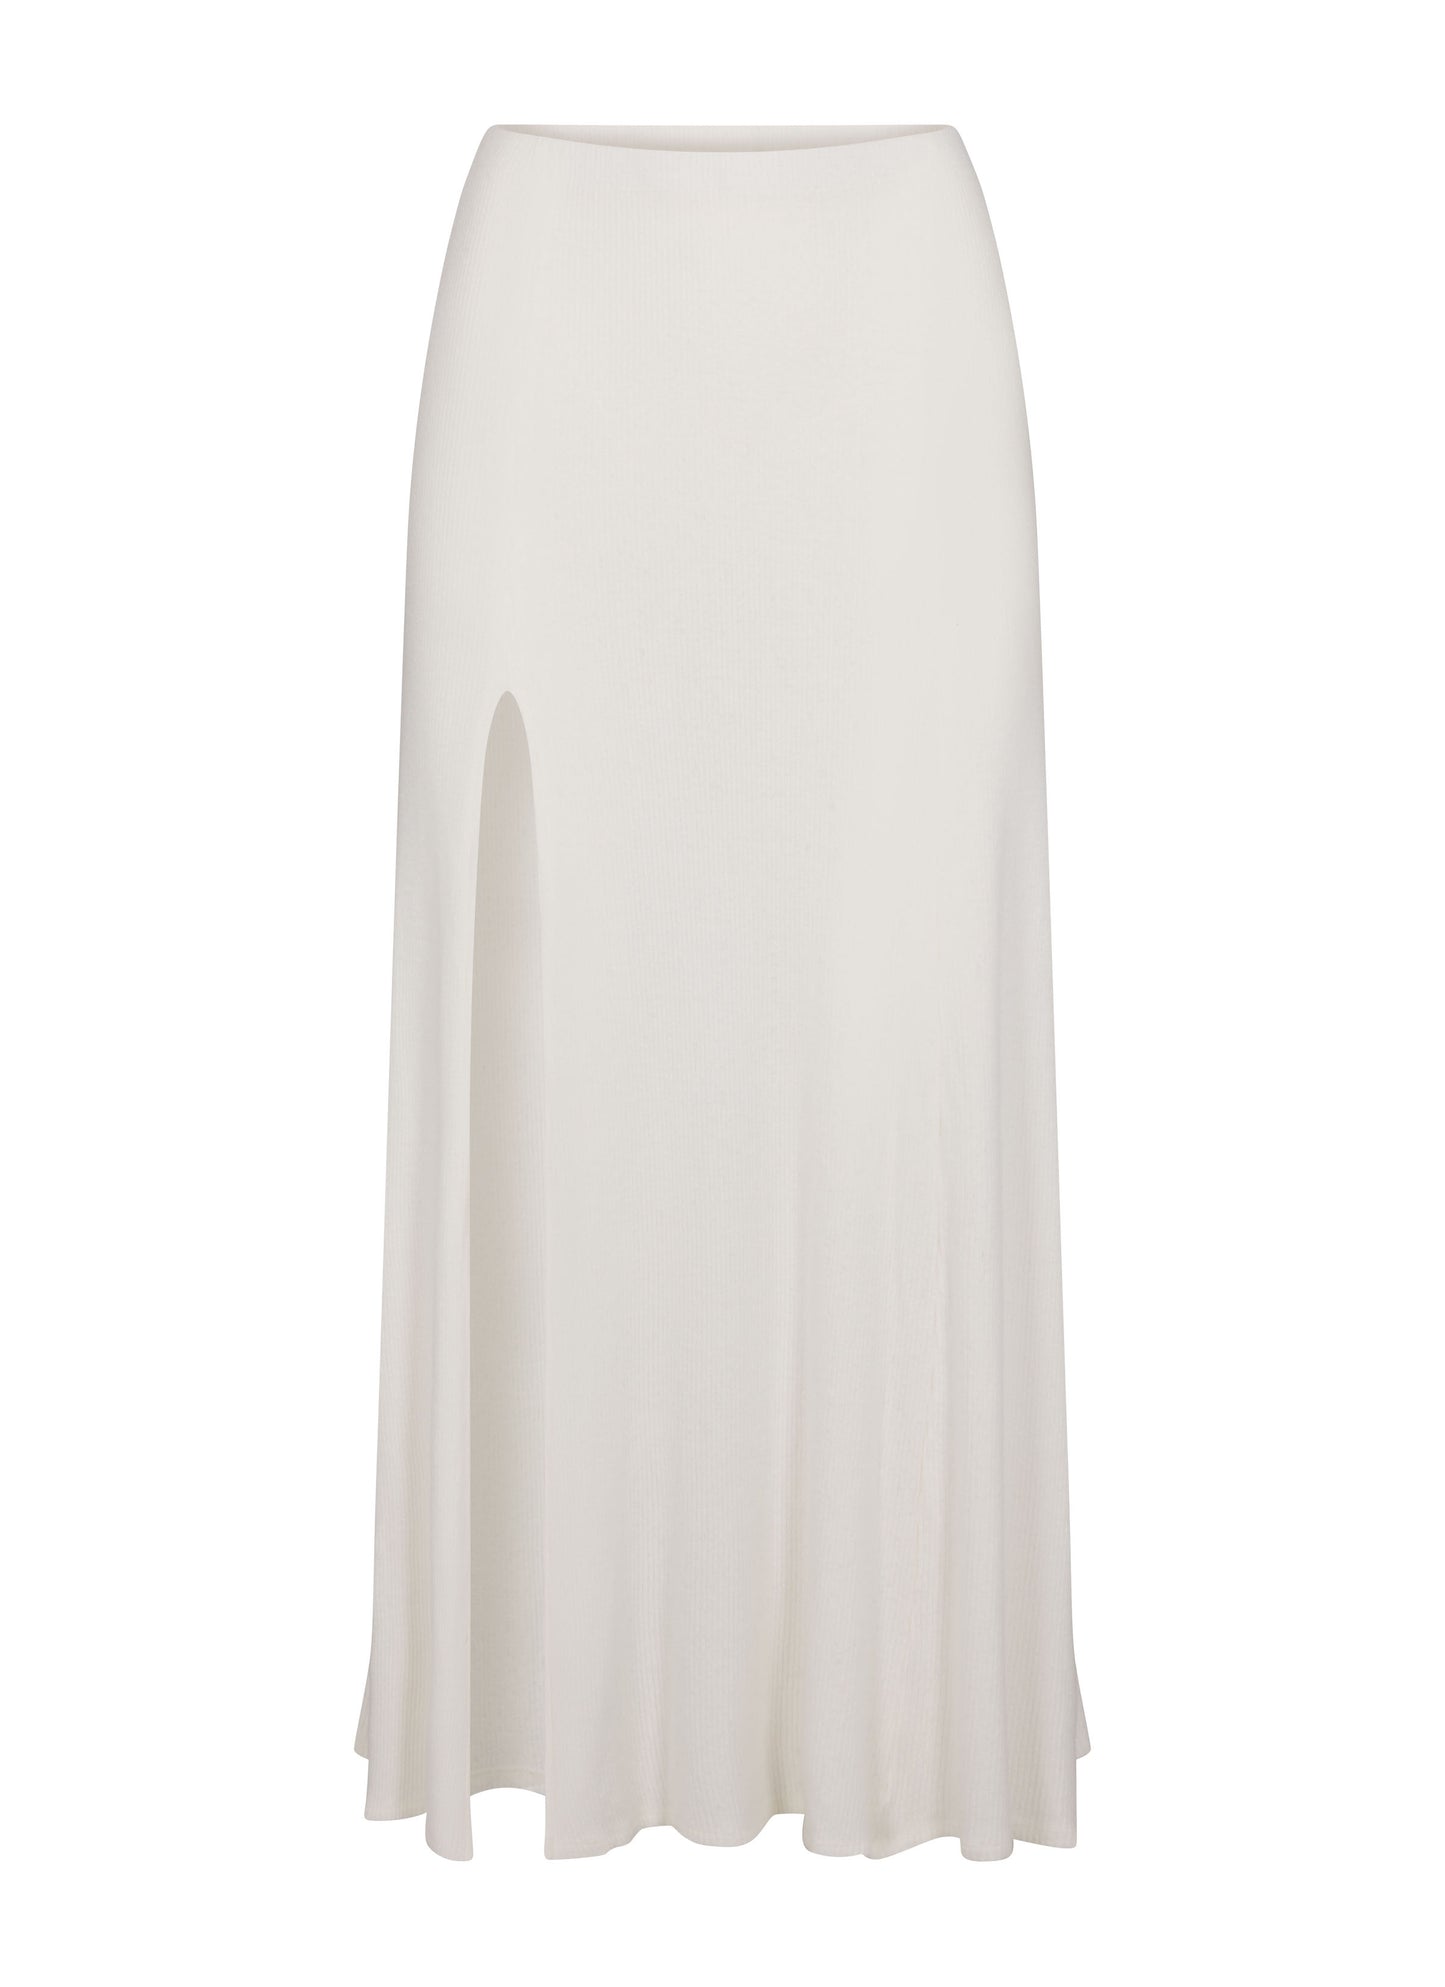 Micro Rib Midi Skirt, White / XS,  - Brownlee